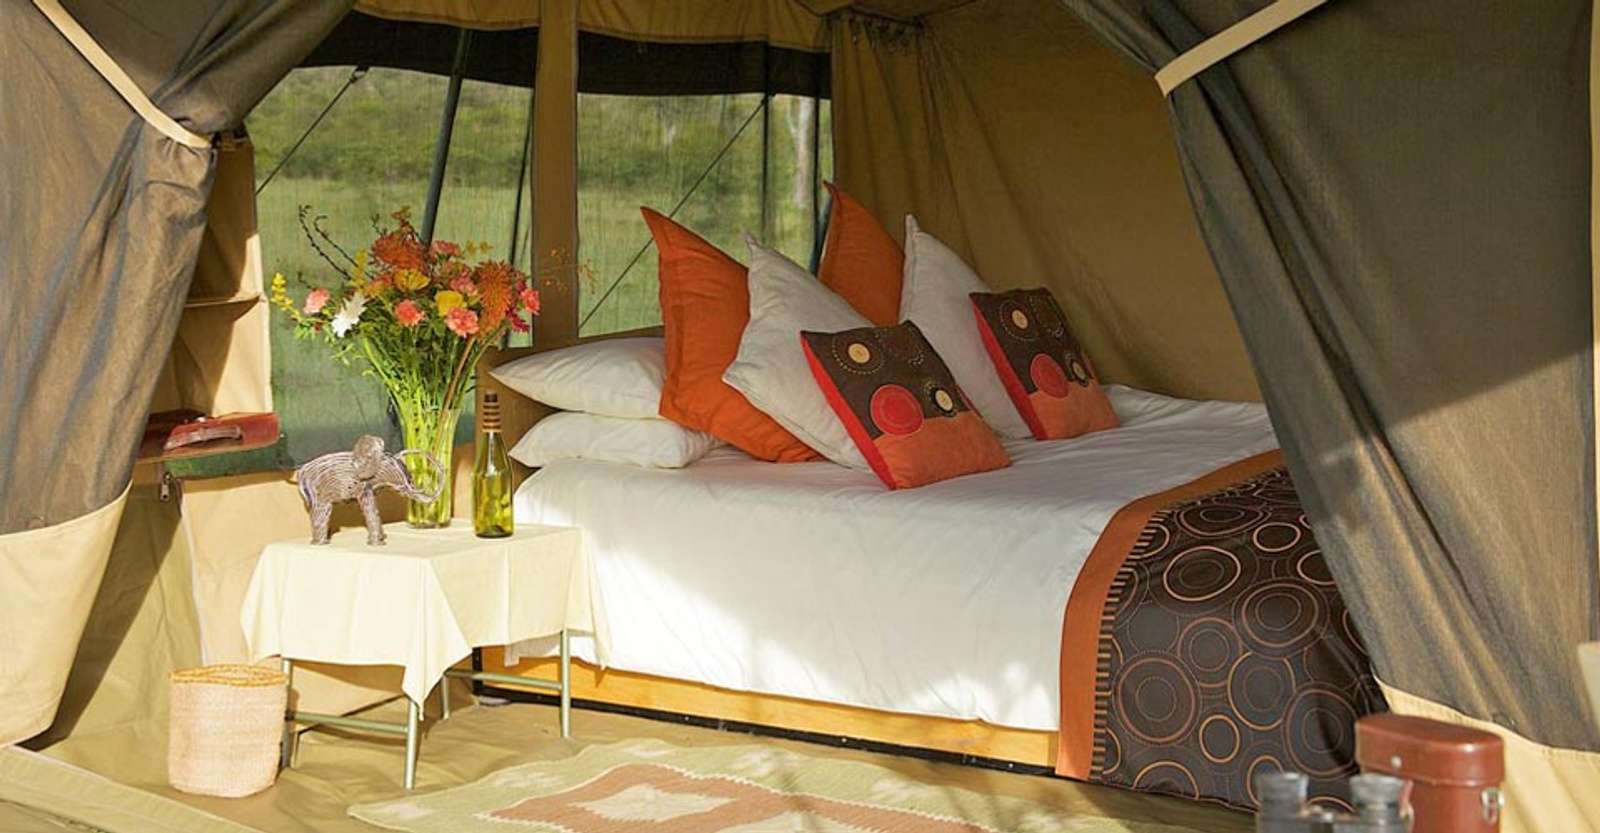 Nat Hab’s Migration Camp bedroom, Maasai Mara National Reserve, Kenya.